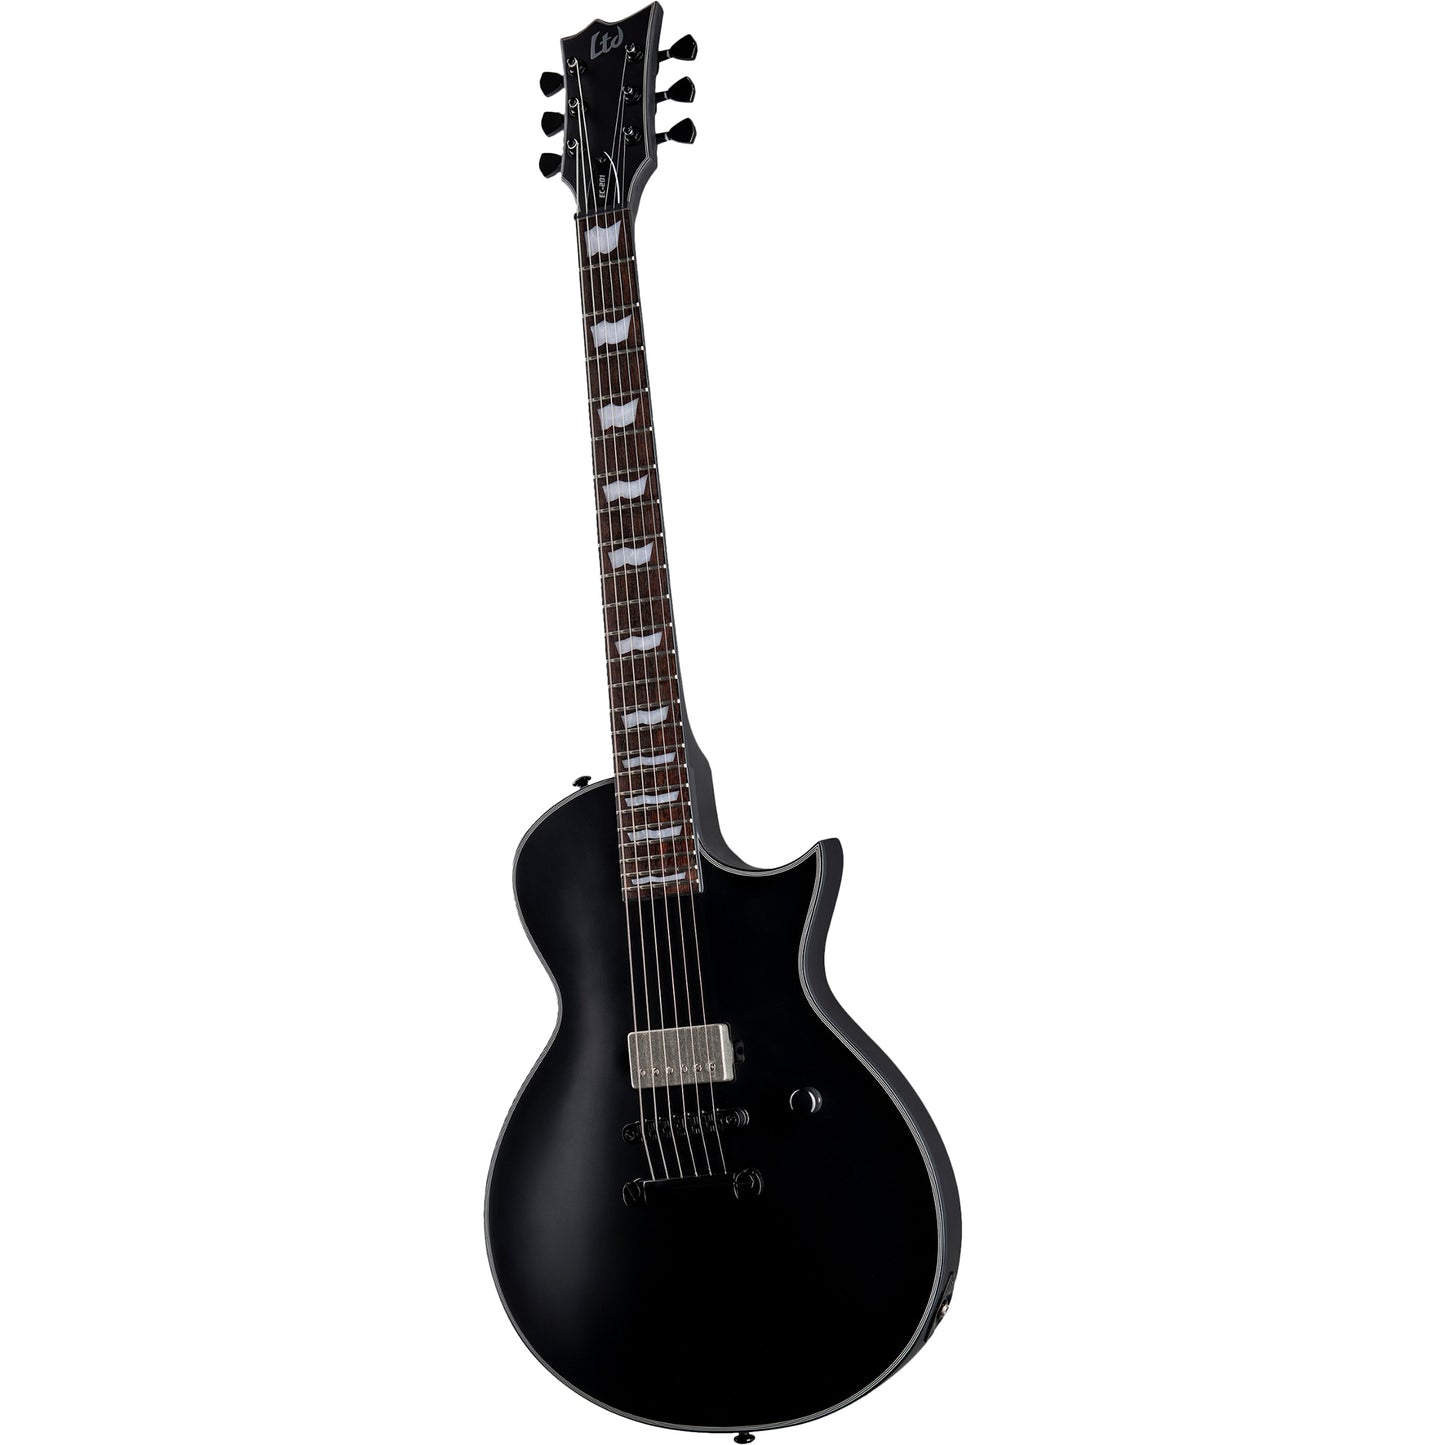 ESP LTD EC-201 Electric Guitar, Black Satin